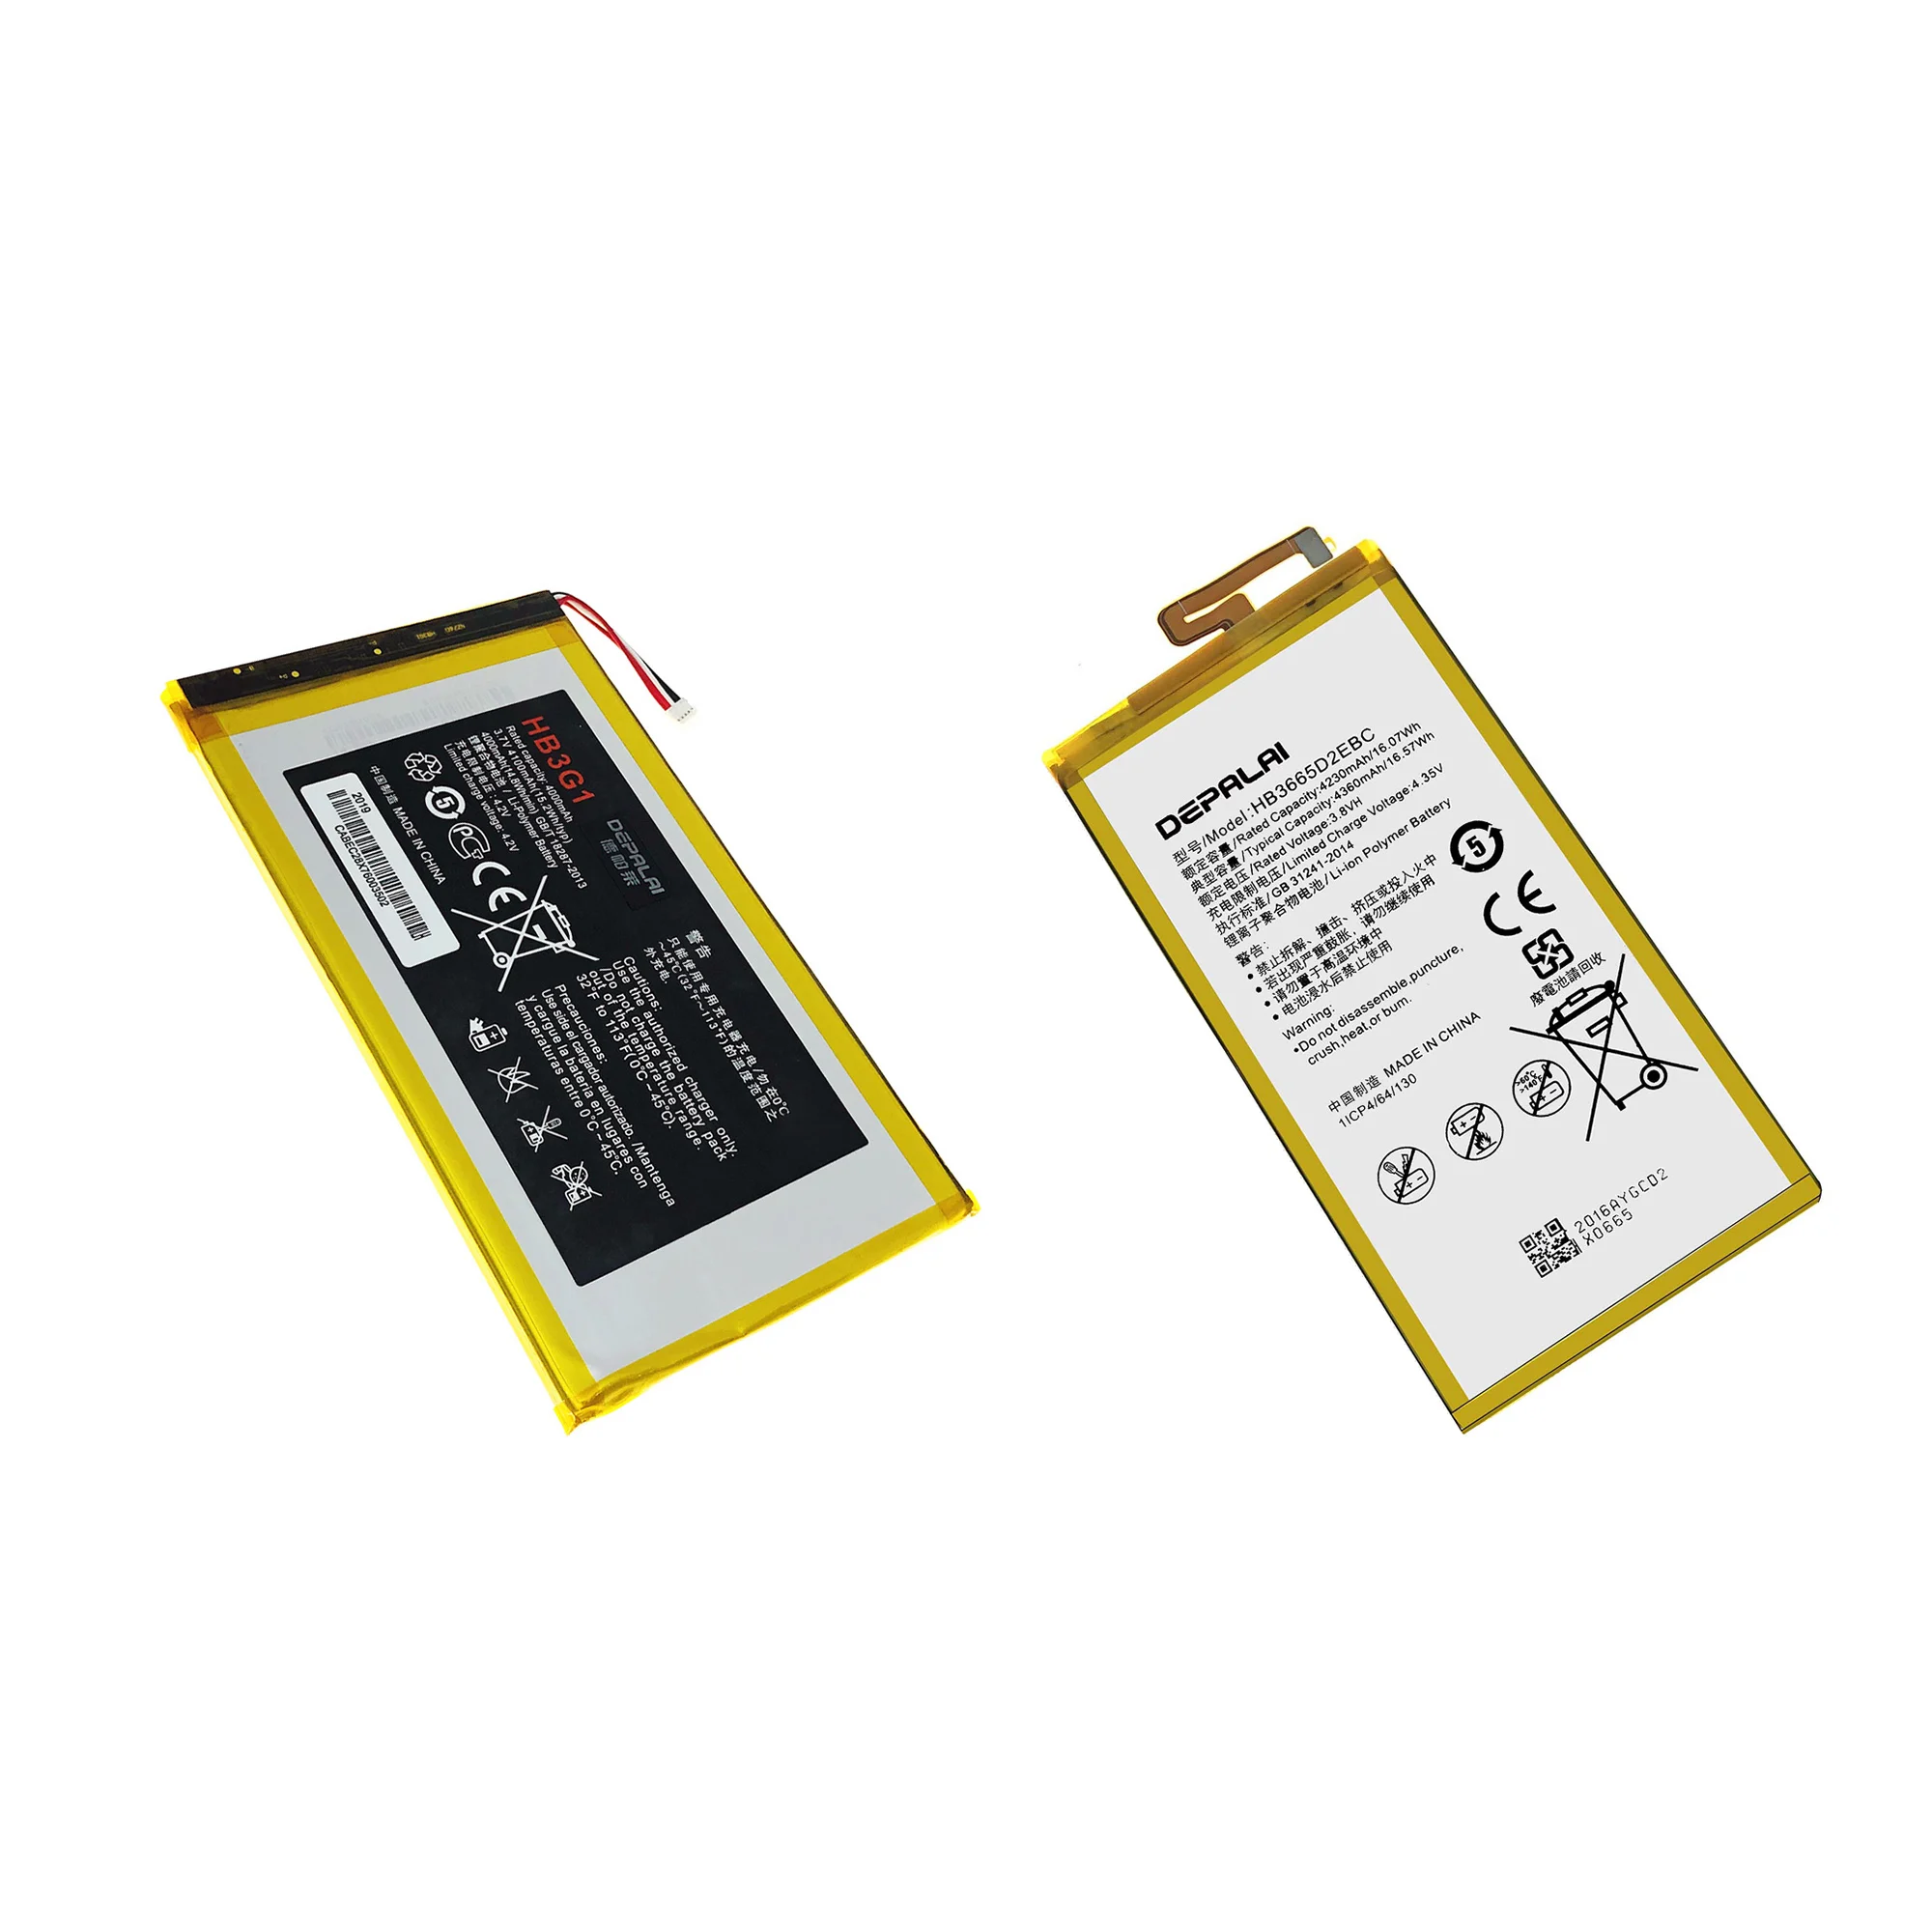 Аккумулятор HB3G1 Для Huawei MediaPad 7 Lite M1 M2 M3 X1 X2 P8 Max Батареи HB2899C0ECW HB3665D2EBC HB3080G1EBW HB3873E2EBC